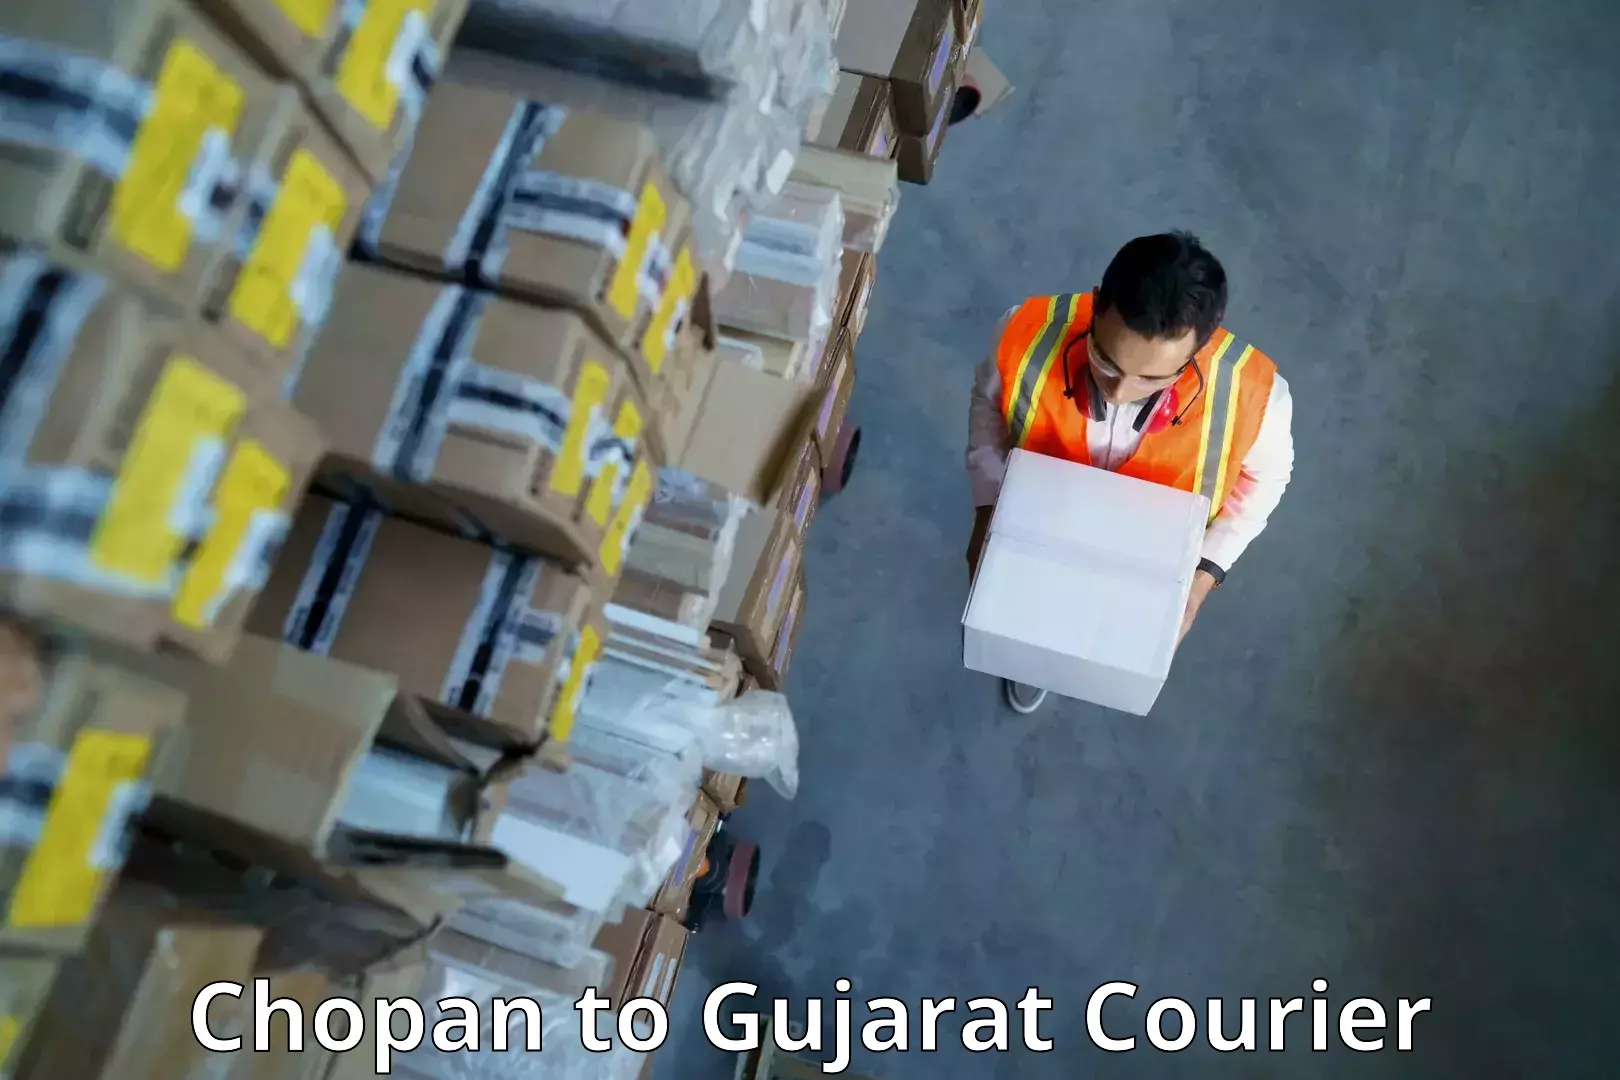 Nationwide shipping capabilities Chopan to Dhrol